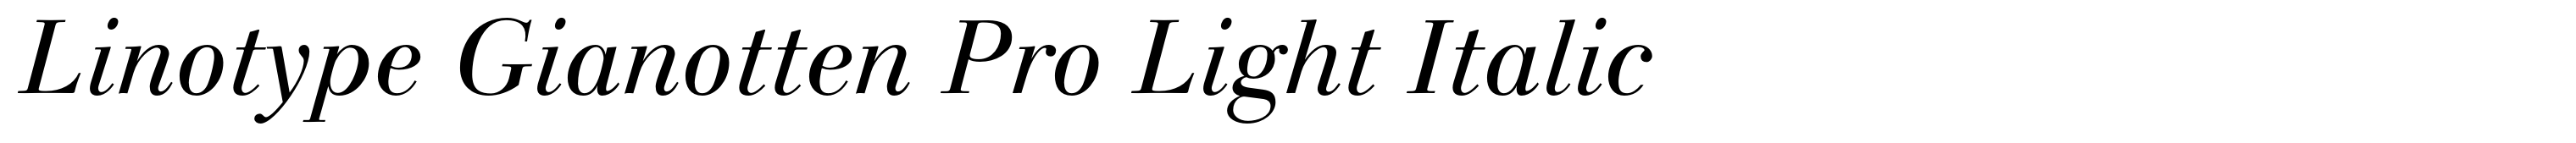 Linotype Gianotten Pro Light Italic